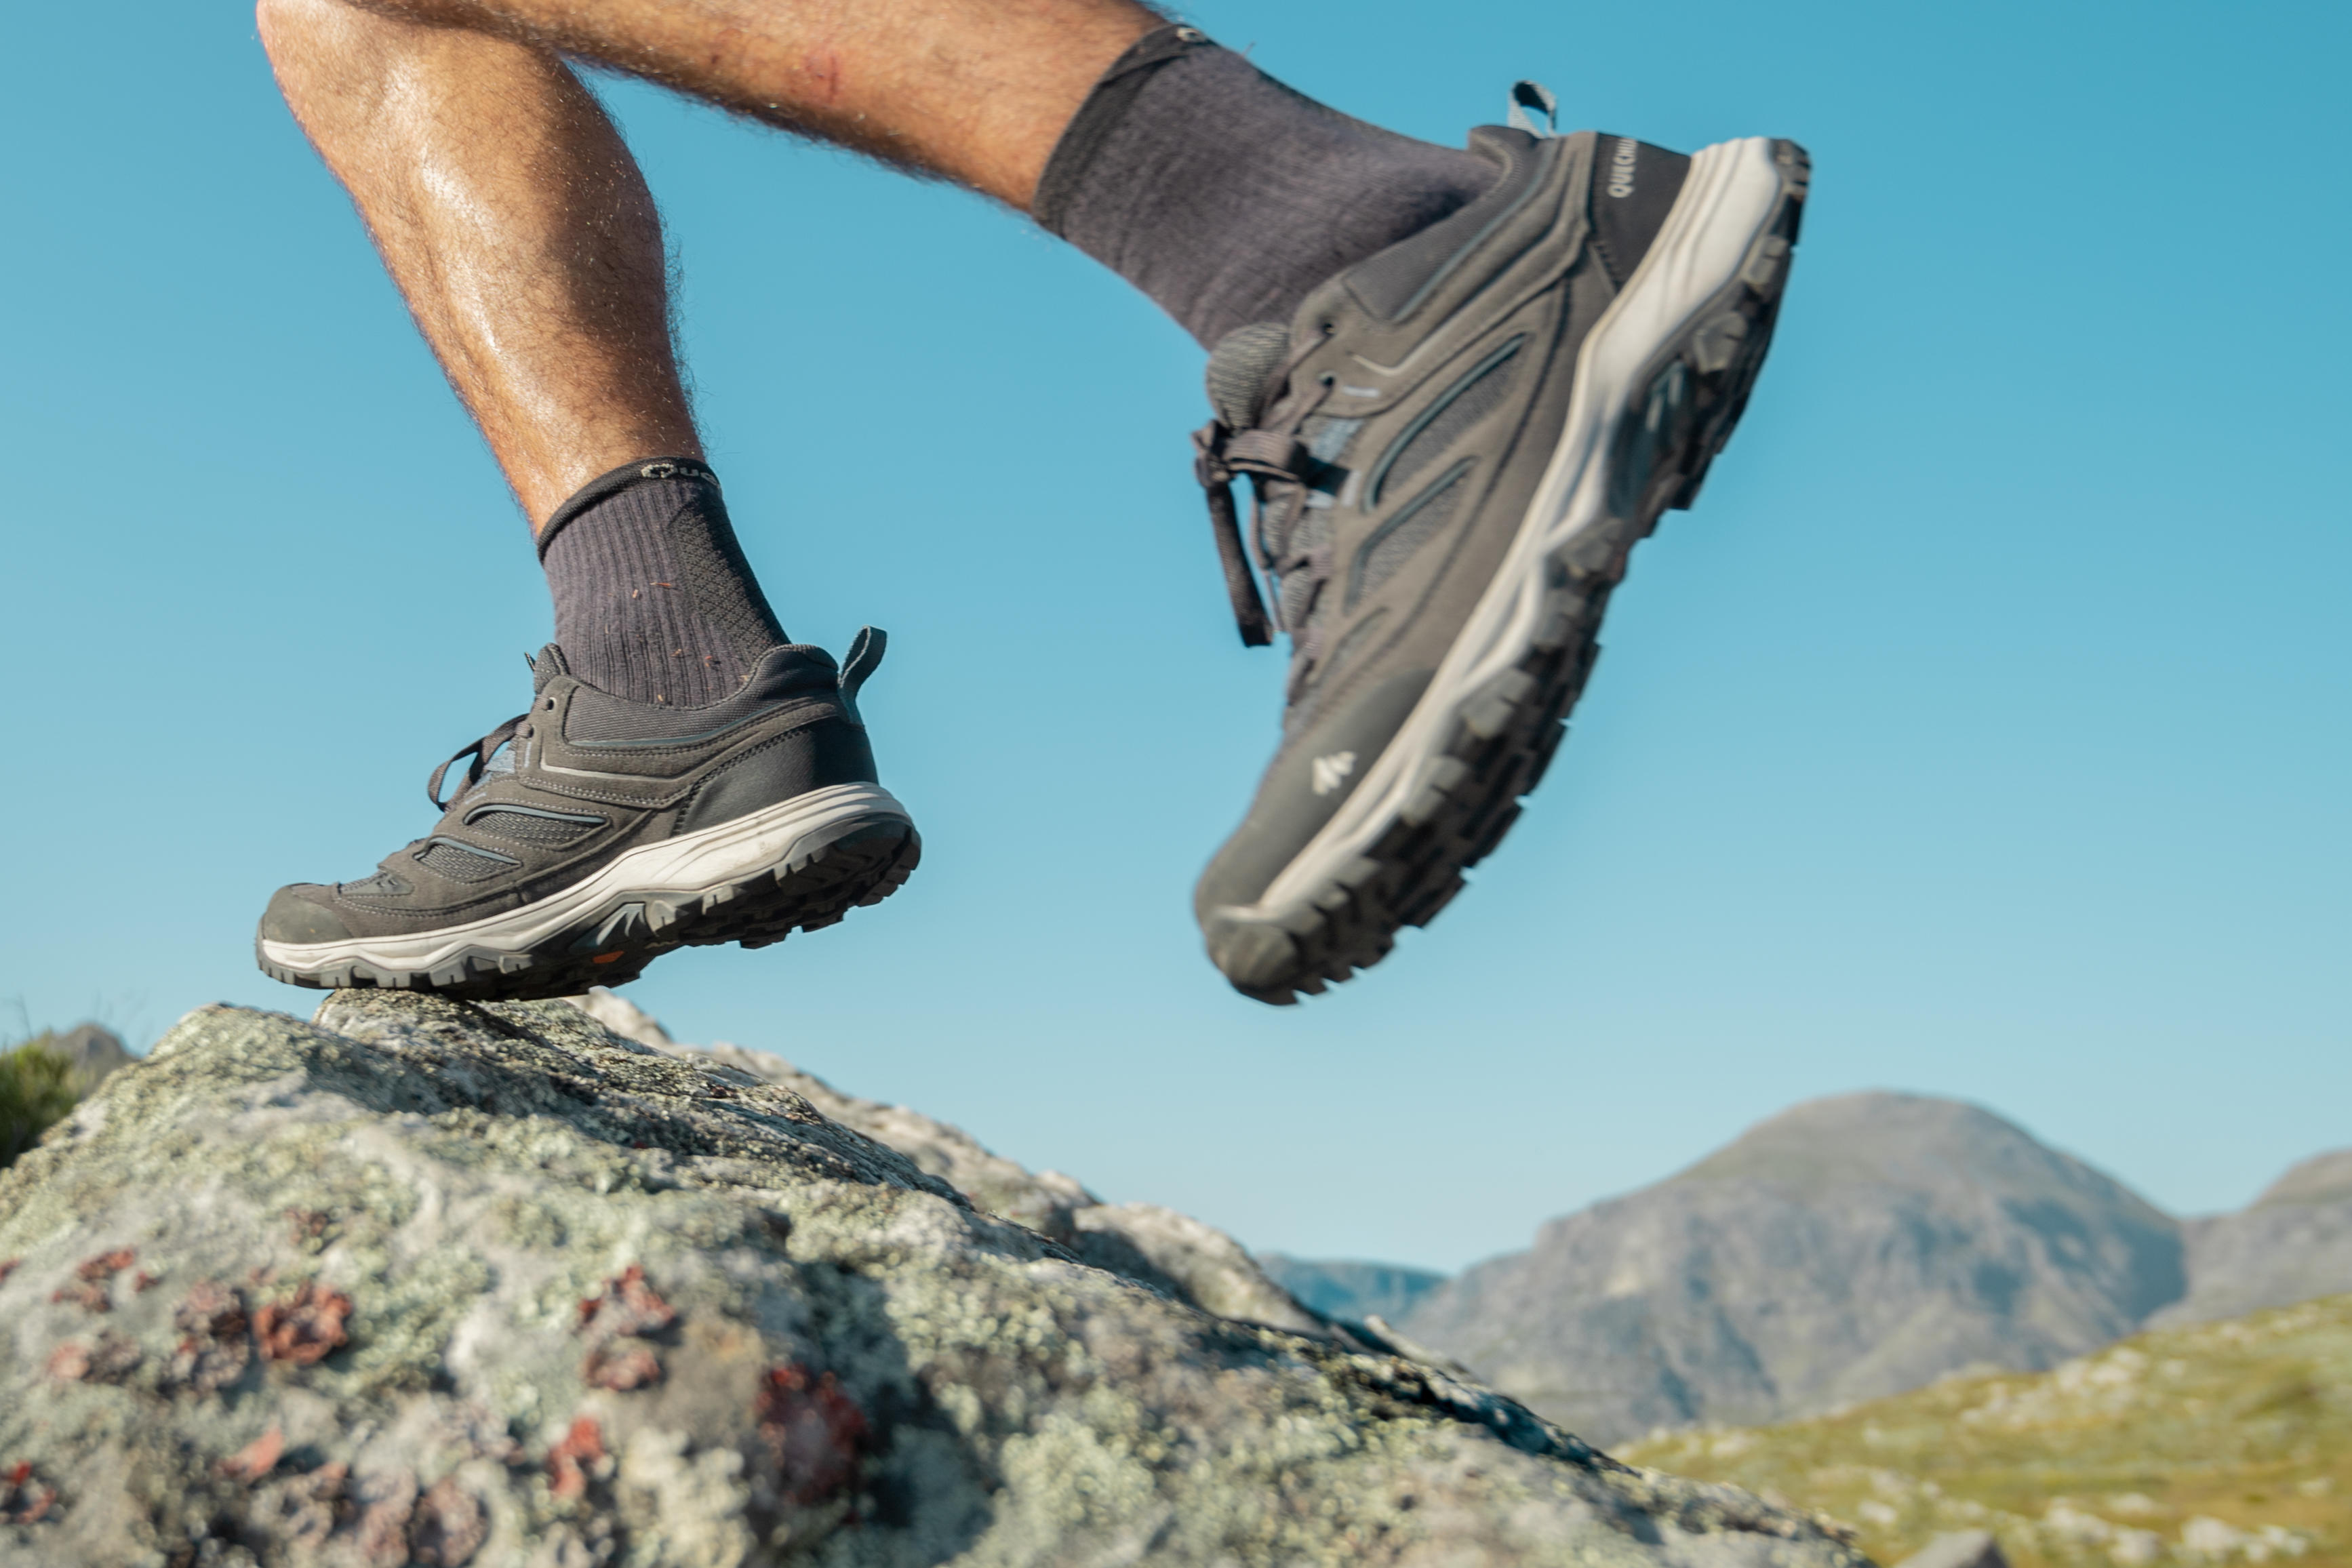 Men’s Hiking Shoes - MH 100 Grey - Carbon grey, Storm grey - Quechua ...